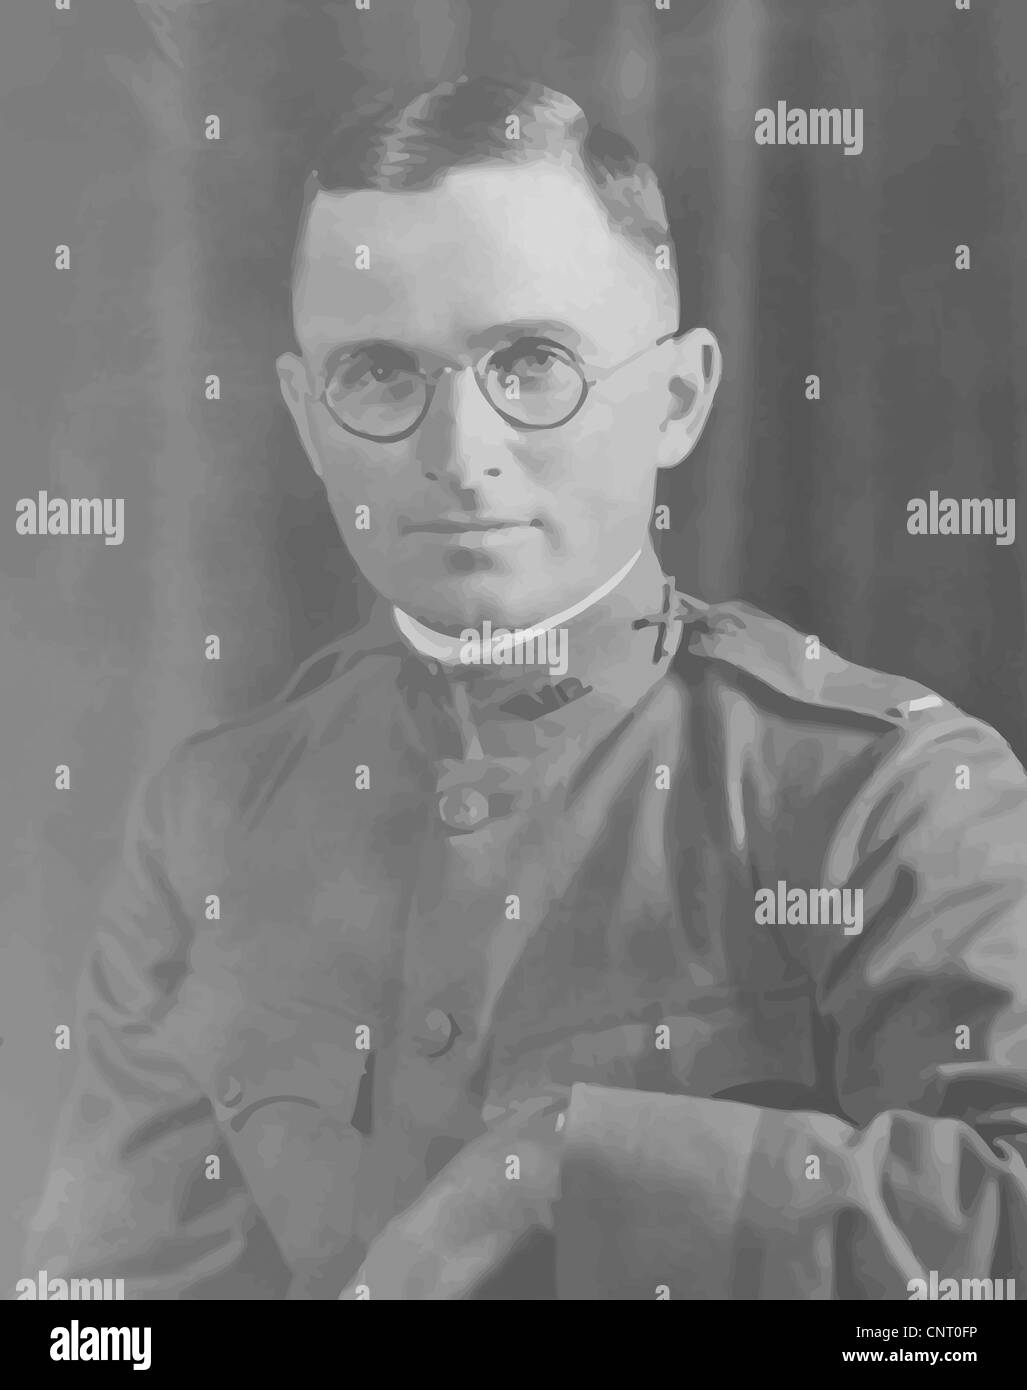 Vector restaurada digitalmente potrait de Harry S. Truman en uniforme. Foto de stock